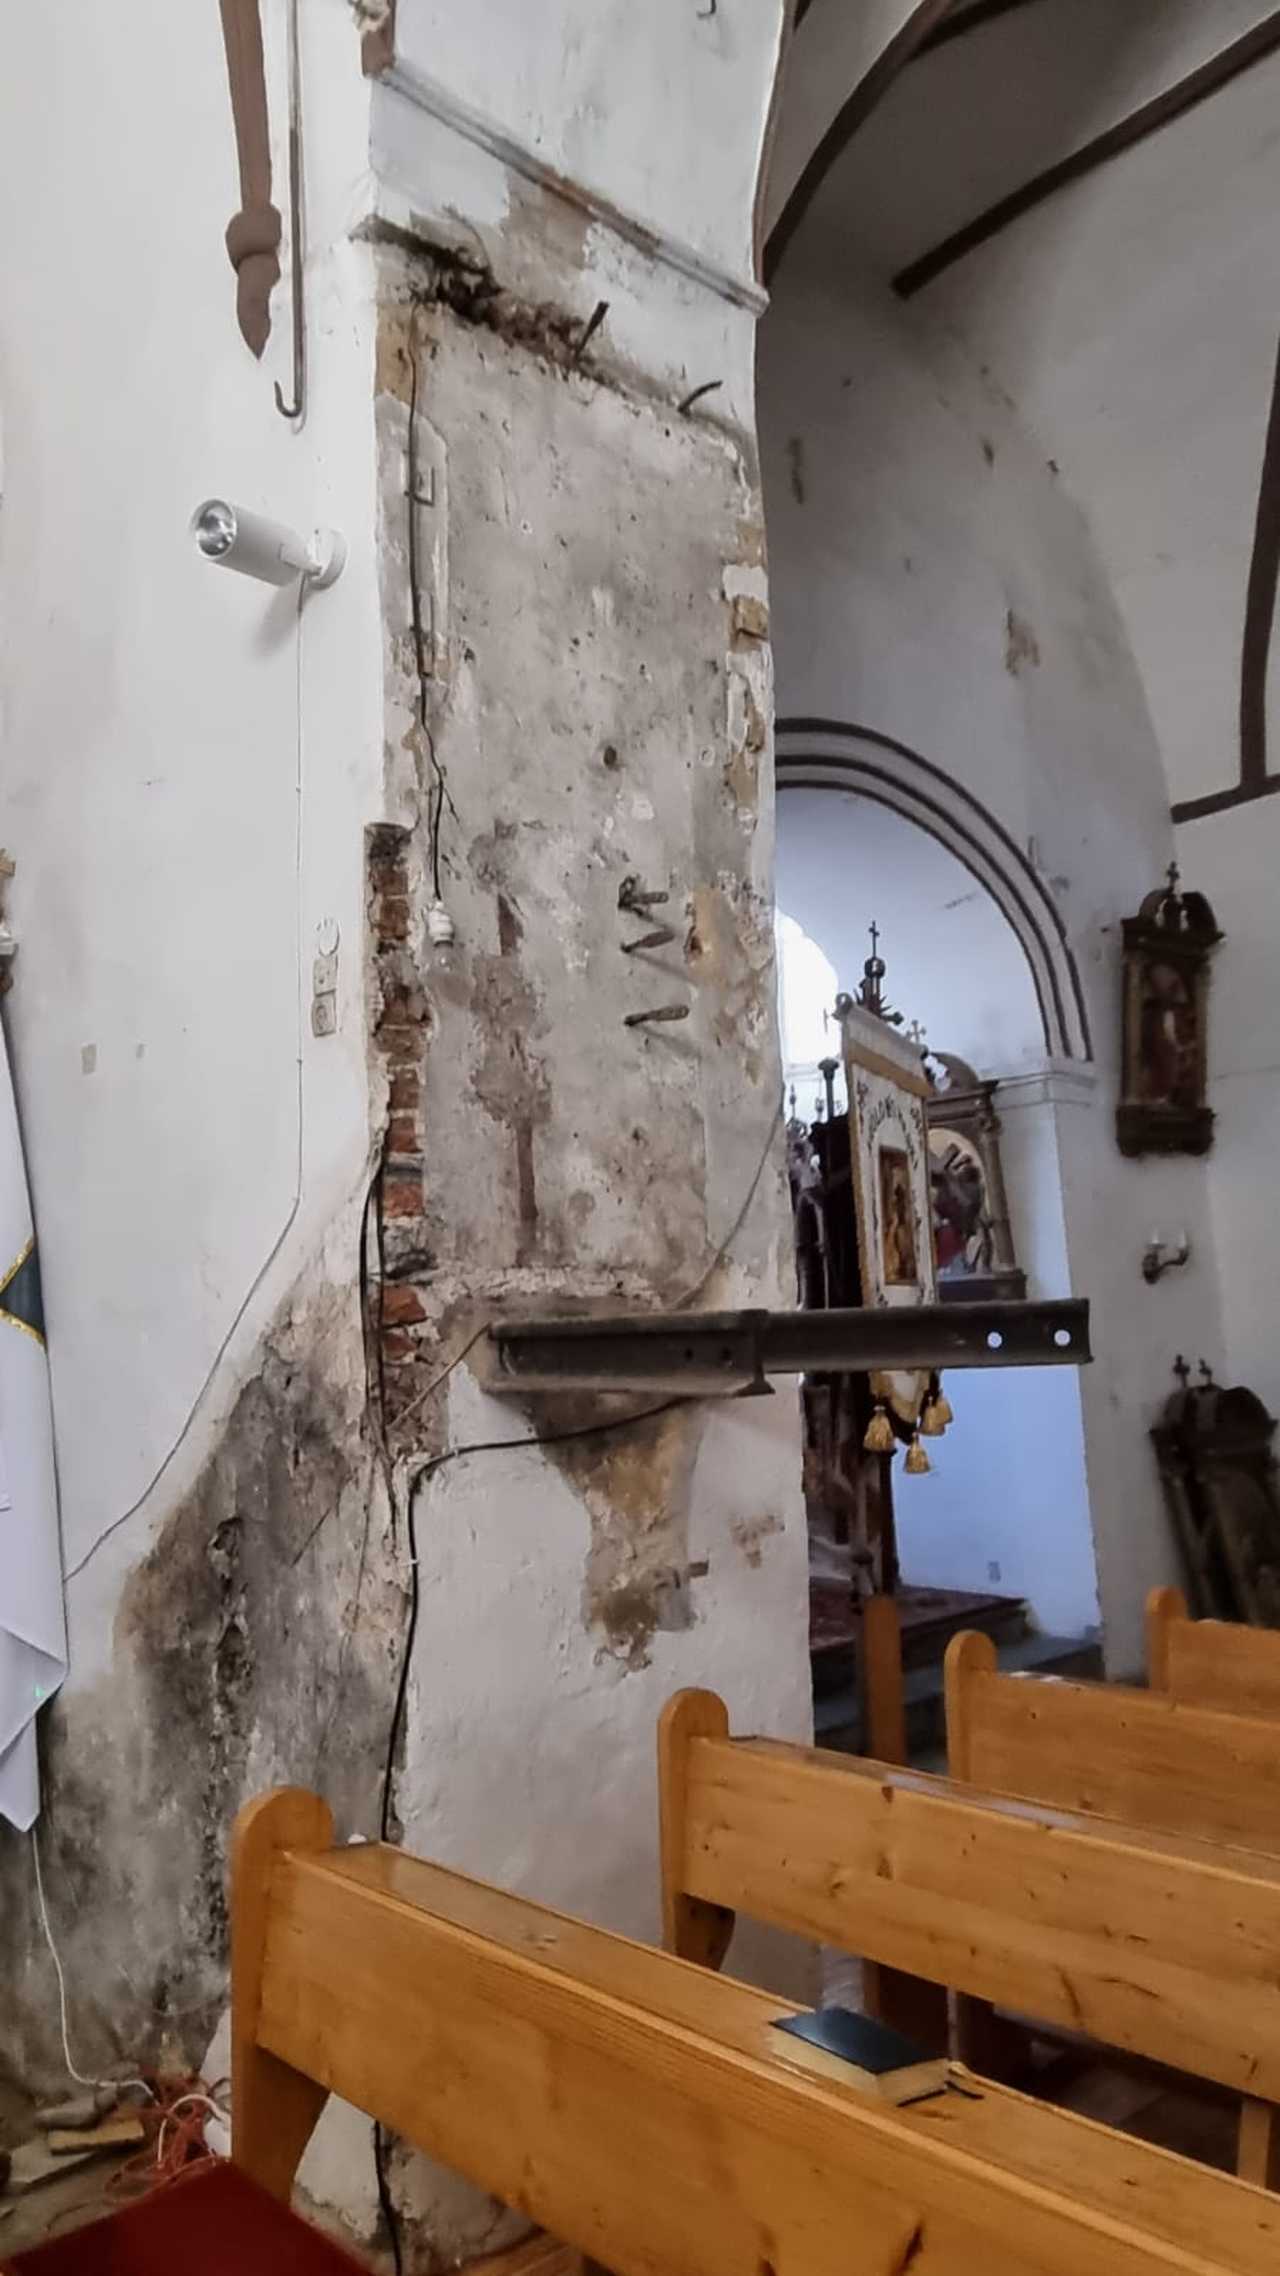 Rewitalizacja mauzoleum w Mrokocinie i konserwacja kościoła w Doboszowicach w ramach Rządowego Programu Odbudowy Zabytków [FOTO]